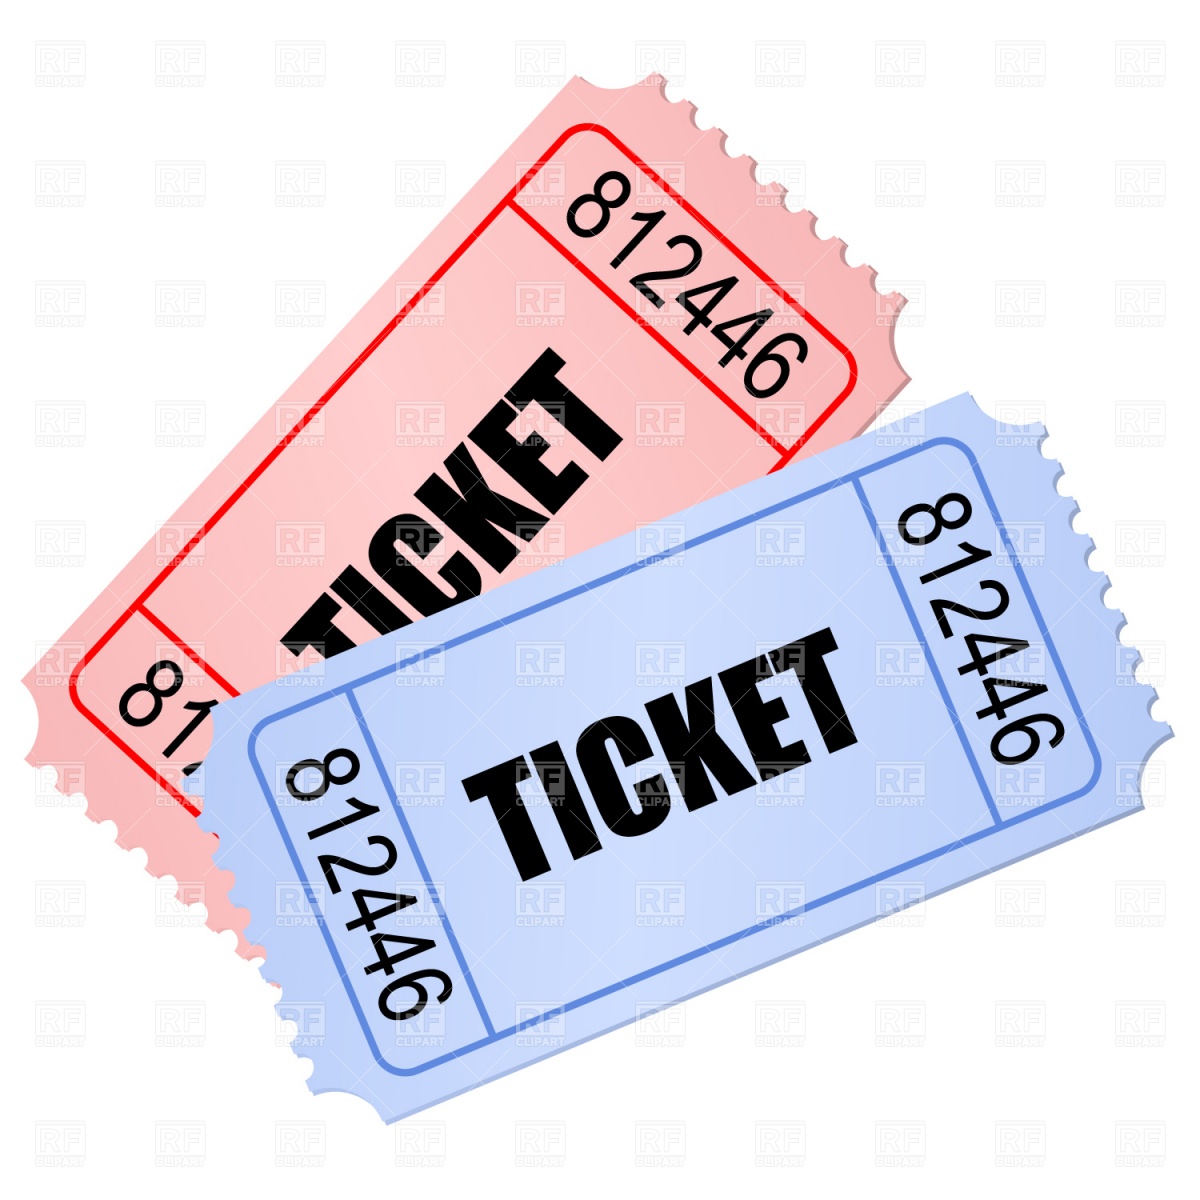 Concert ticket clipart